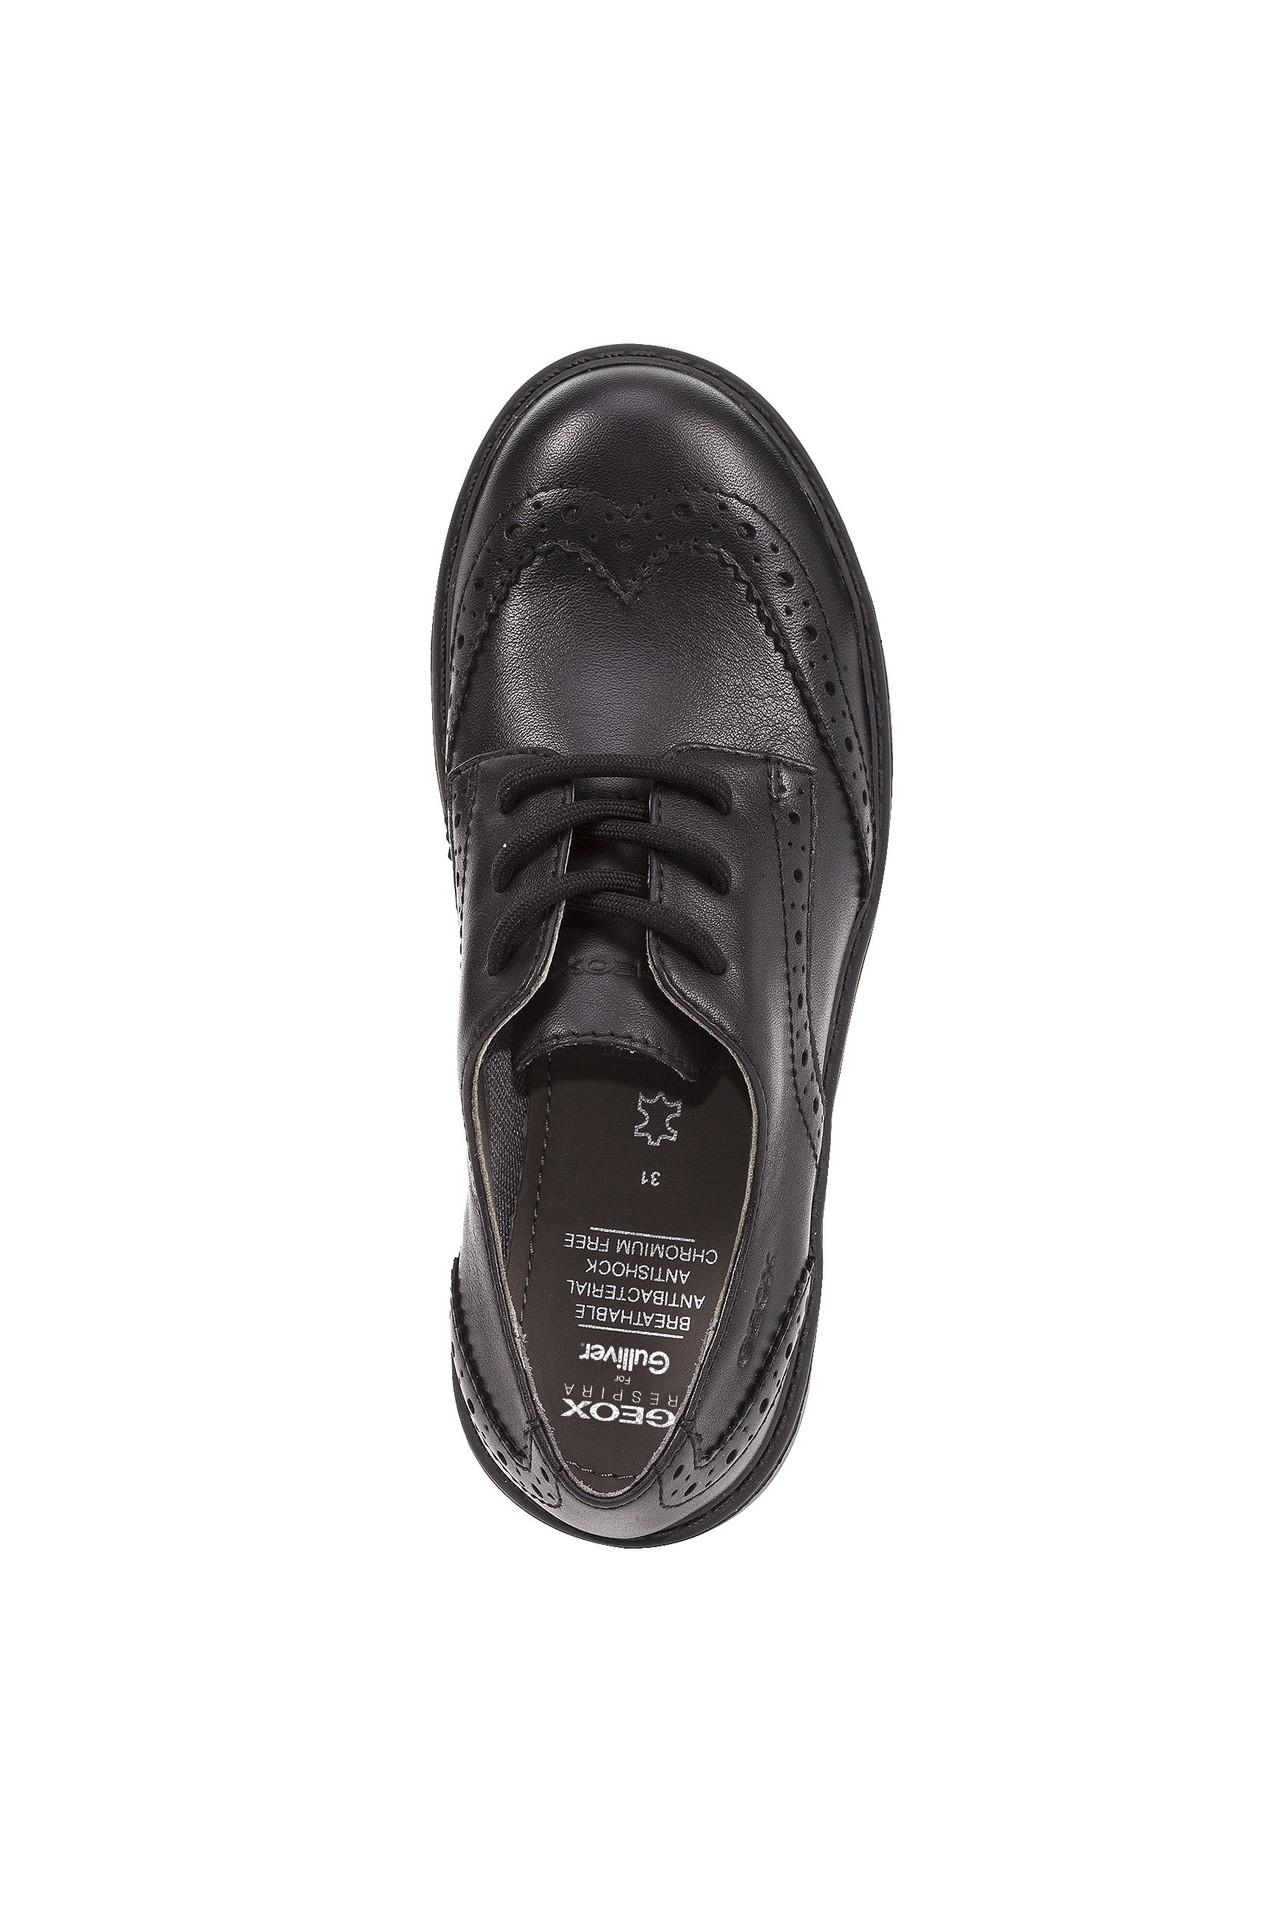 Туфли дерби Geox J6420NL0085C9999, размер 36, цвет черный - фото 5